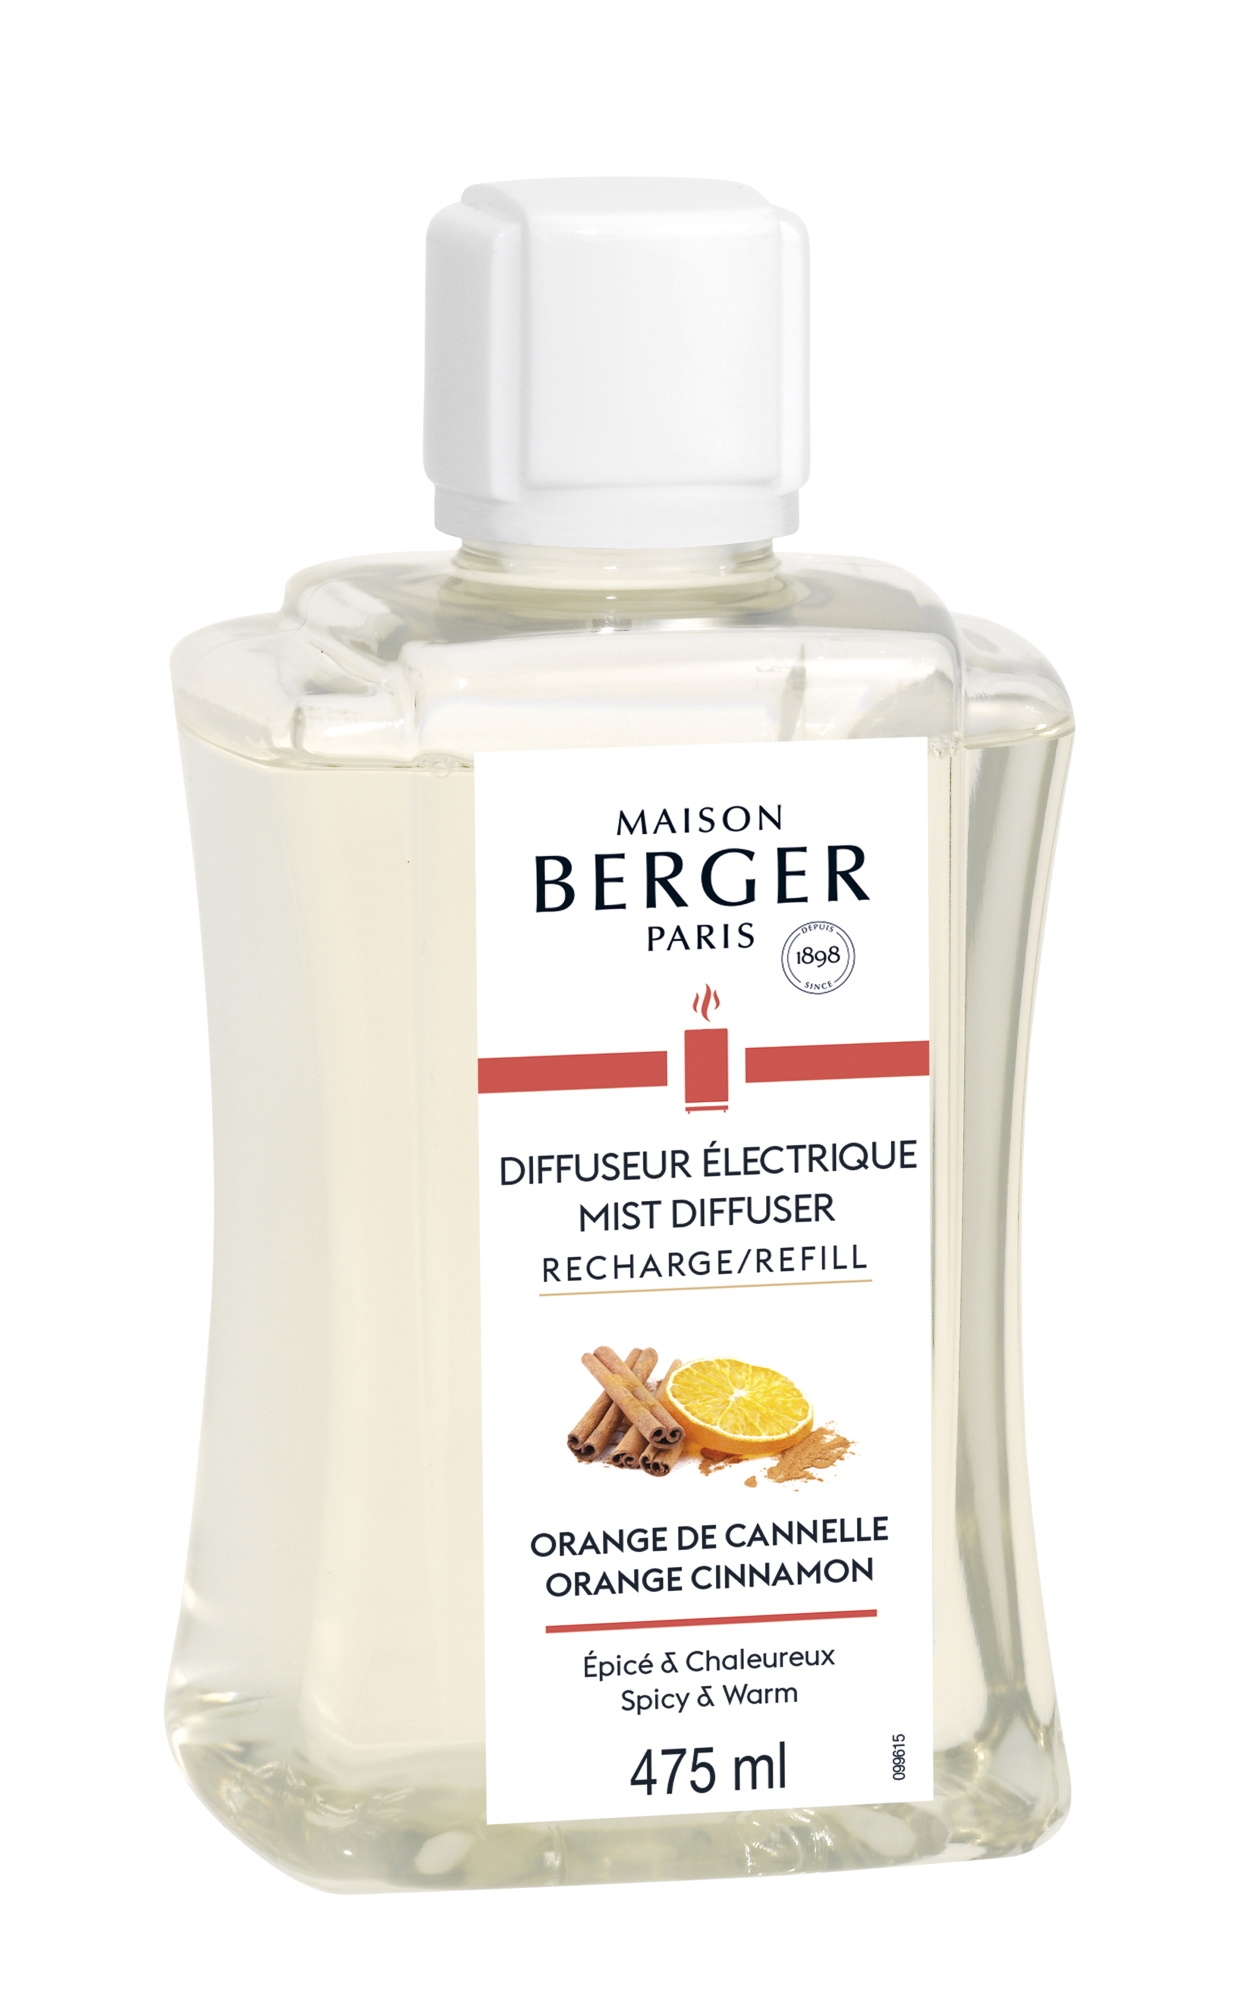 Parfum pentru difuzor ultrasonic Berger Orange de Cannelle 475ml Maison Berger pret redus imagine 2022